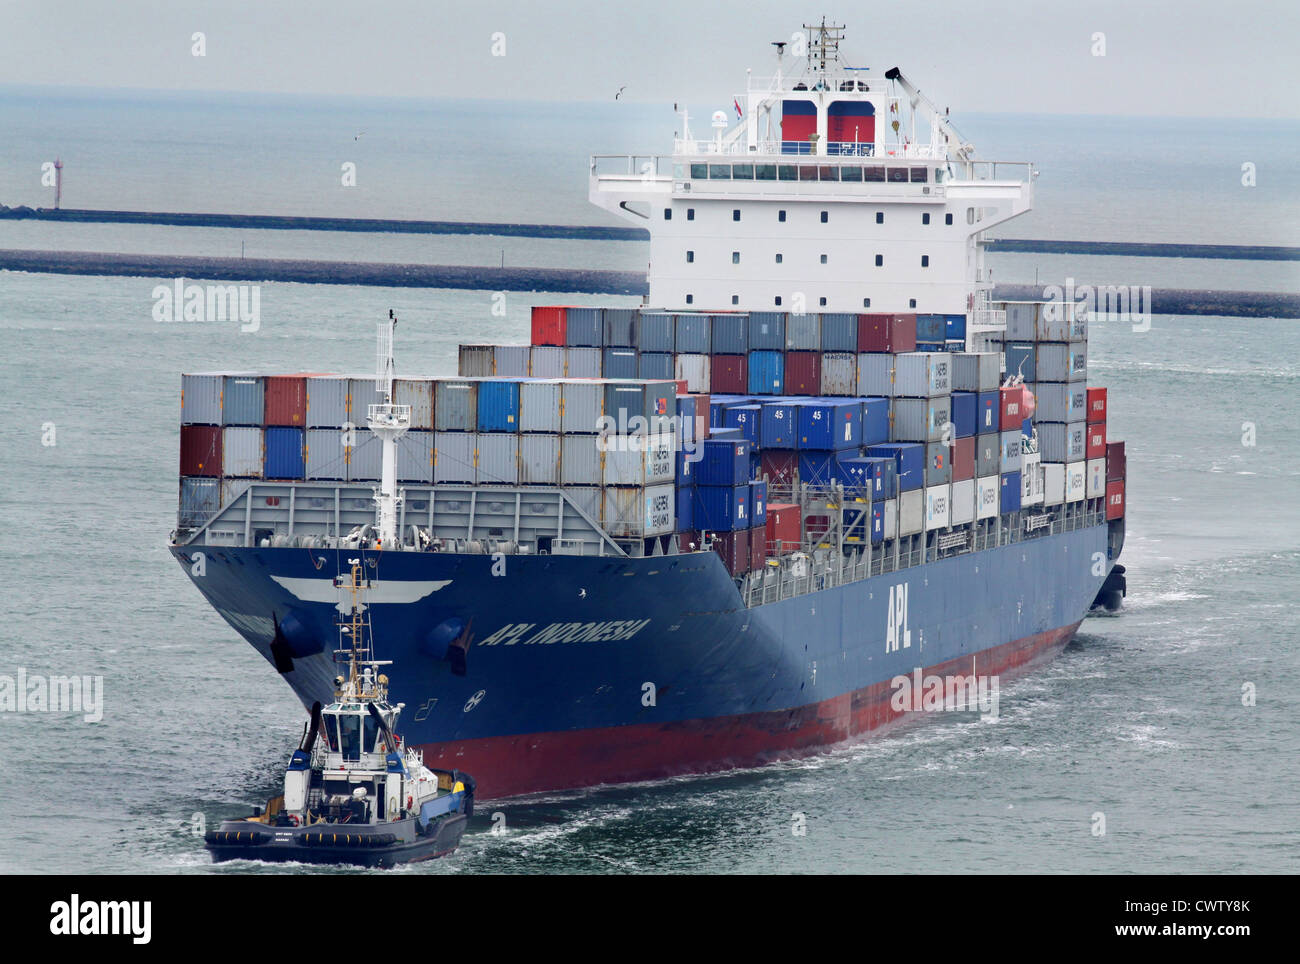 50.246 Dwt, 2010 gebaute Containerschiff APL Indonesien navigieren im Rotterdamer Hafen mit Schlepper-Hilfe Stockfoto